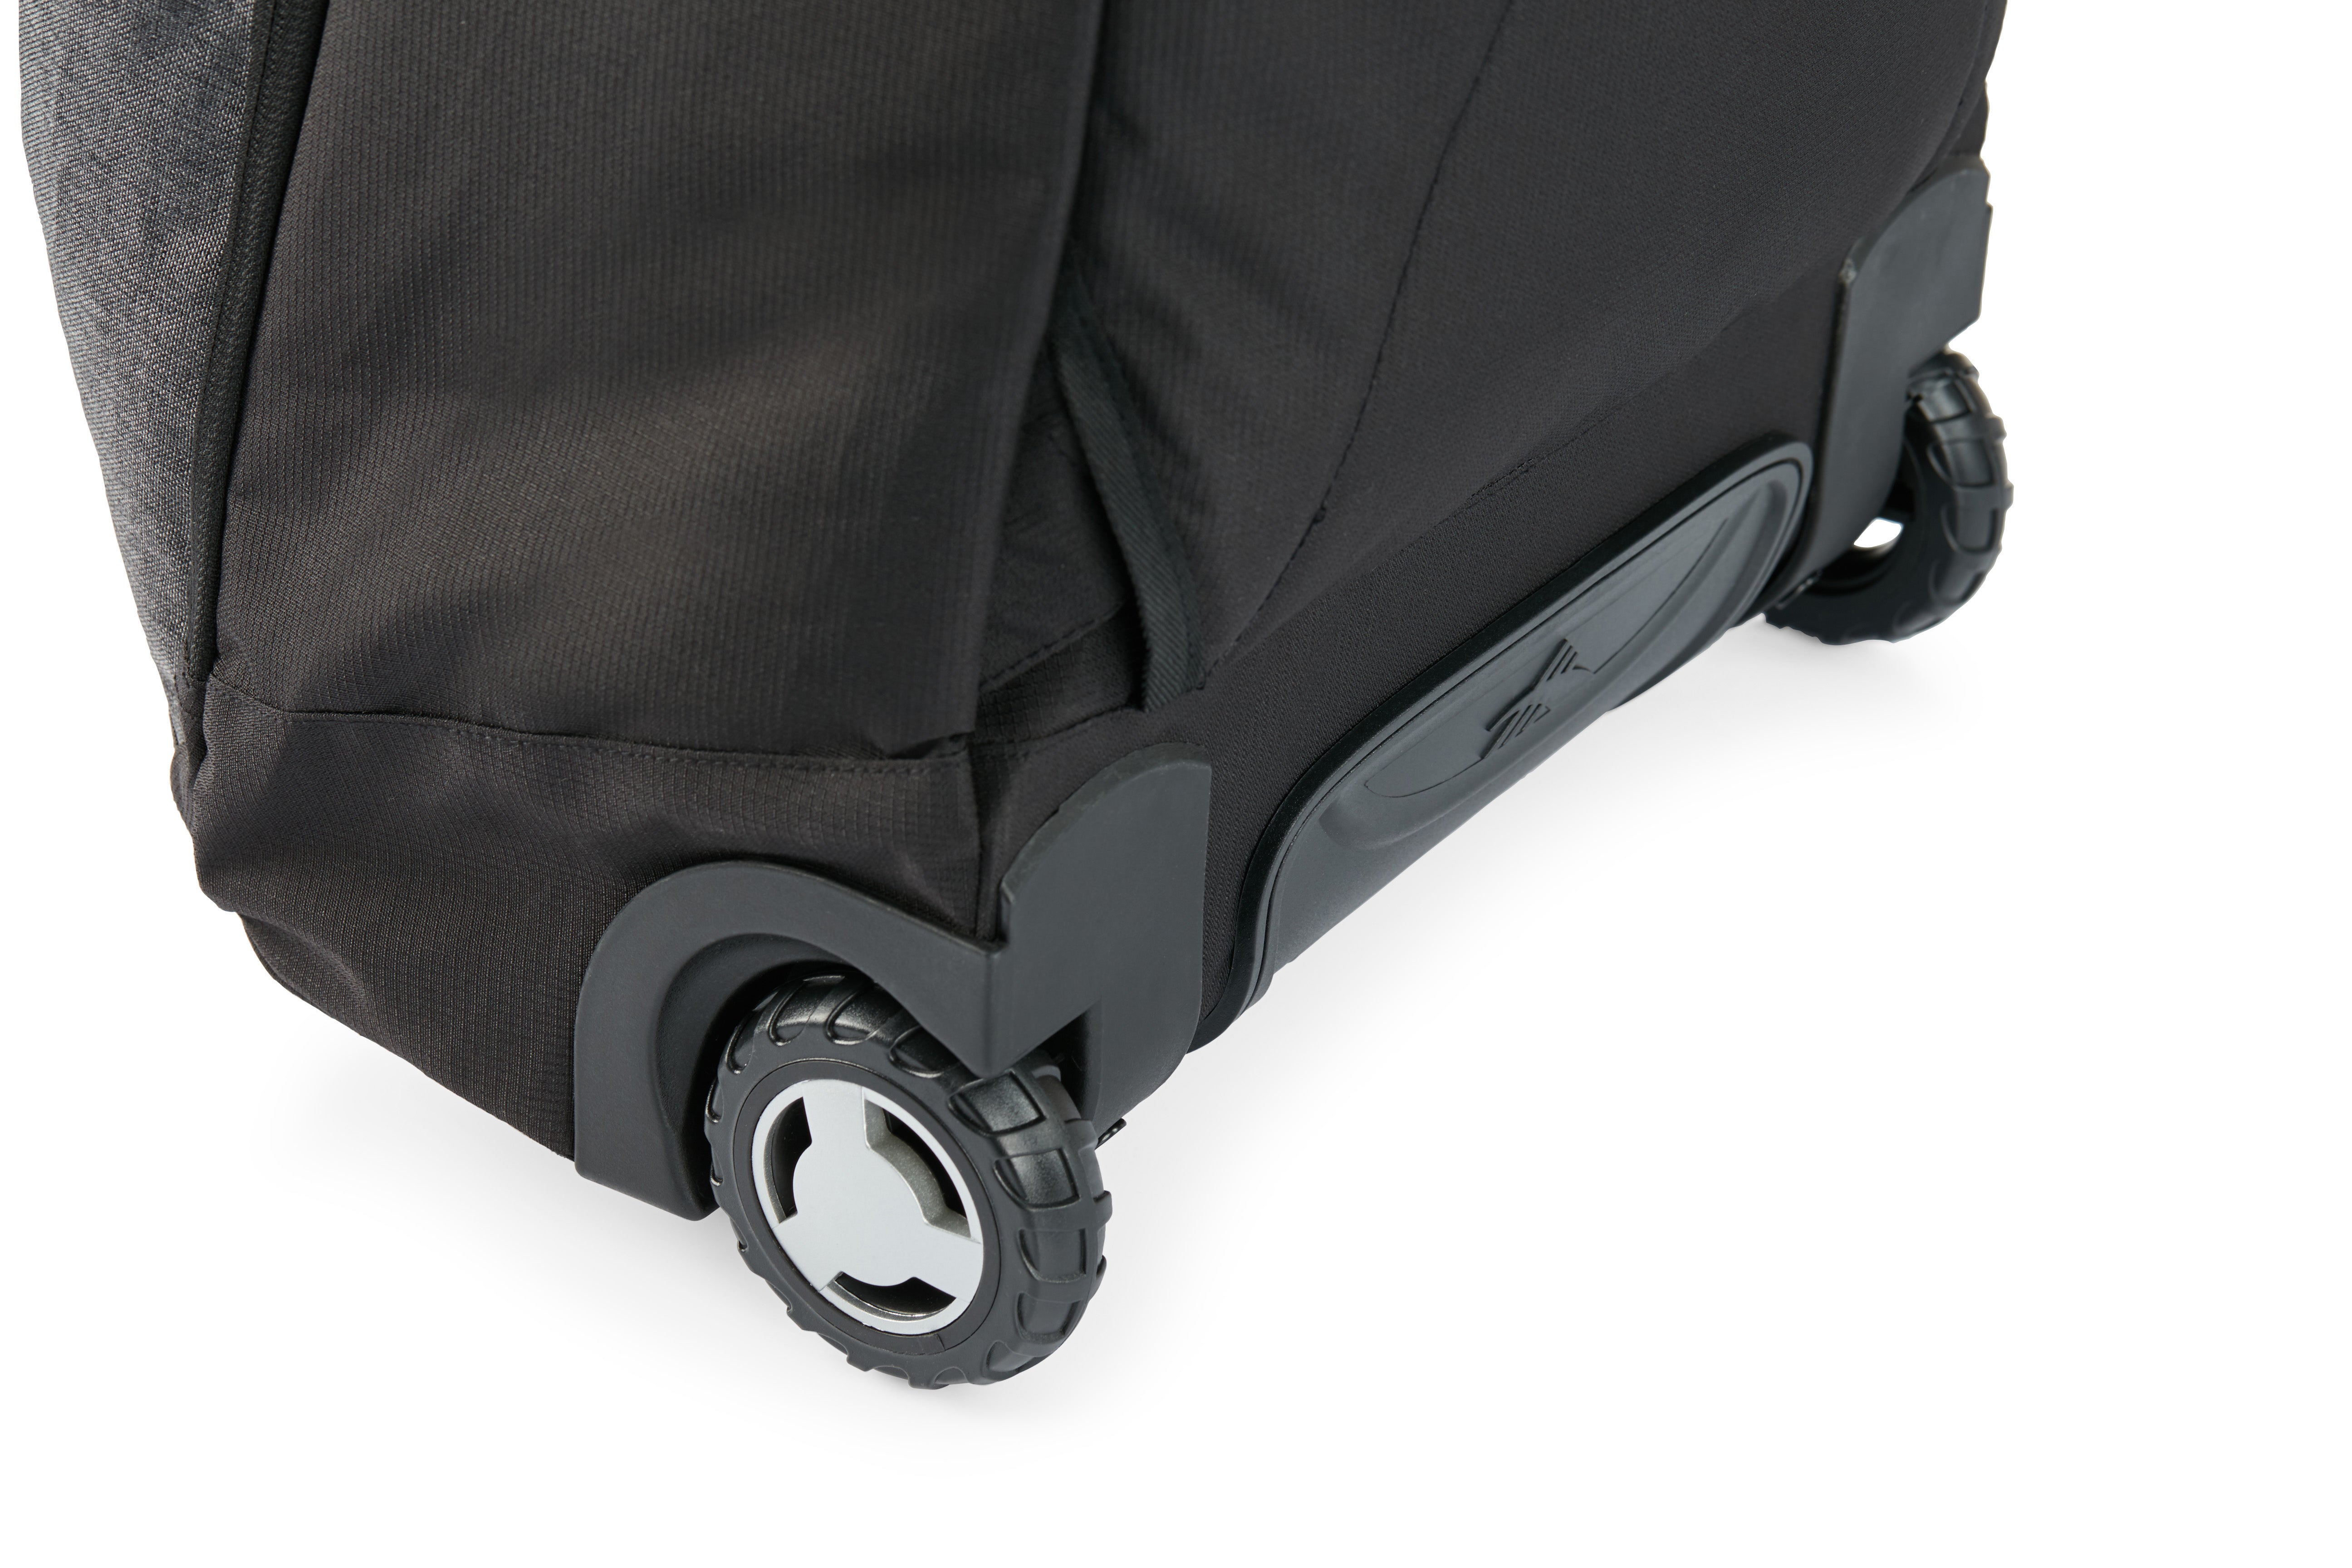 High Sierra - Jarvis Pro backpack on wheels - Black-14